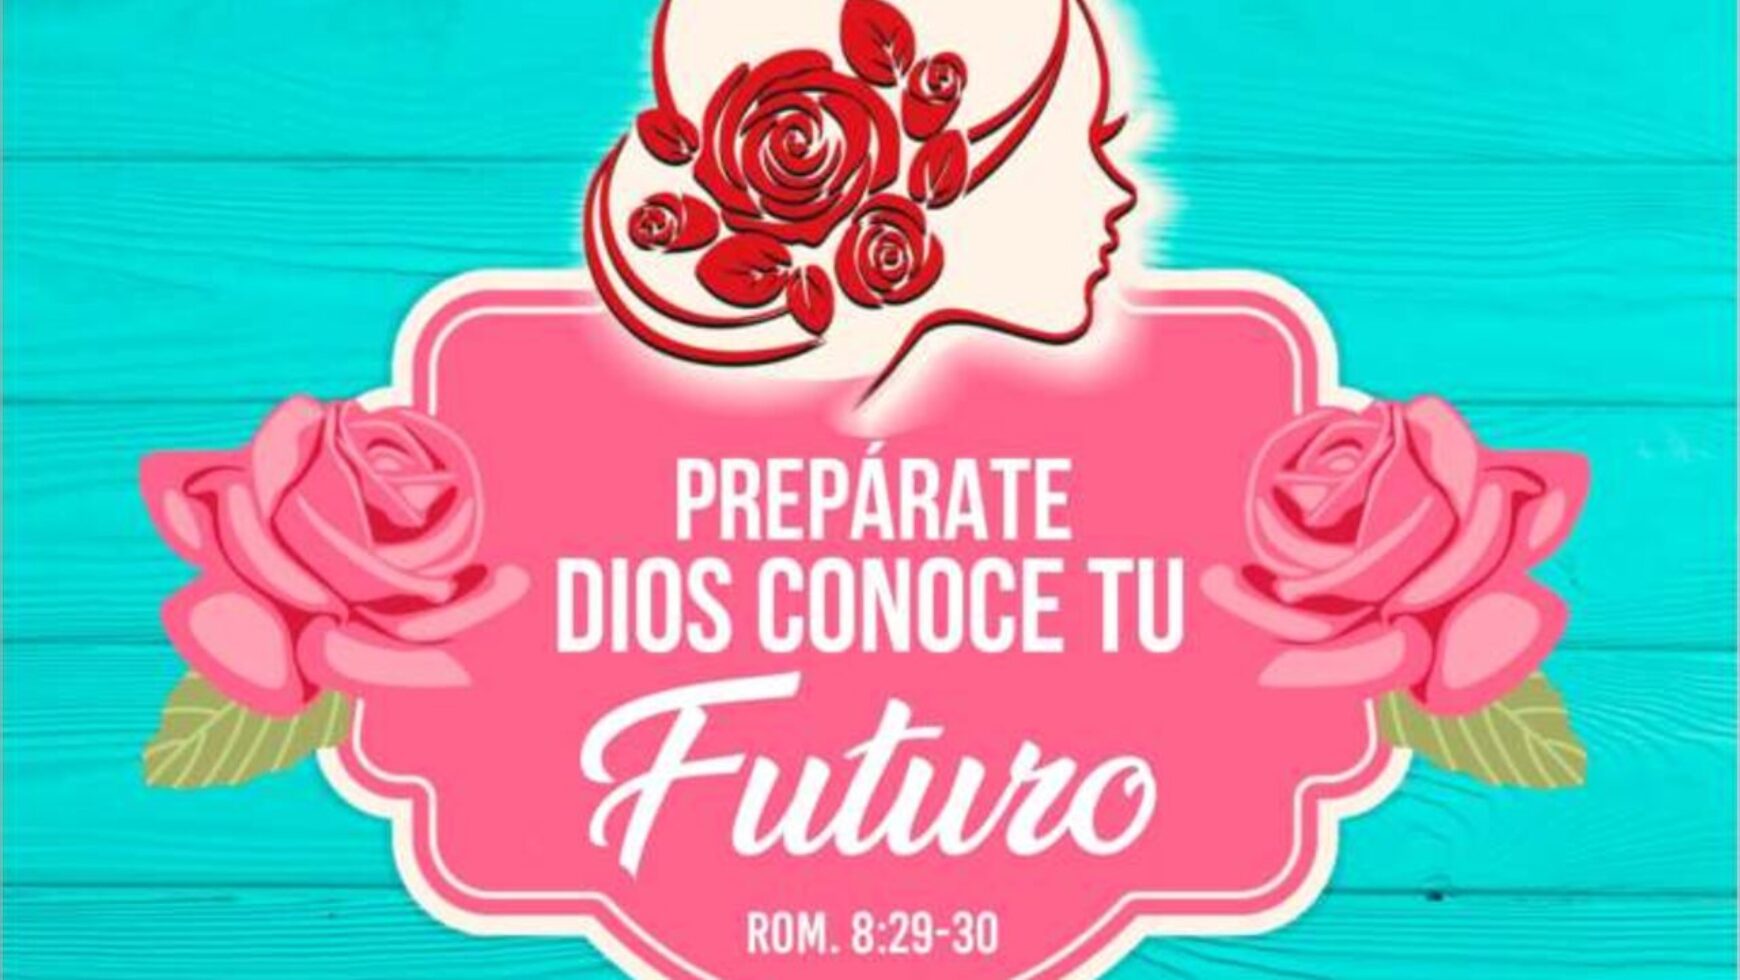 Prepárate Dios conoce tú futuro